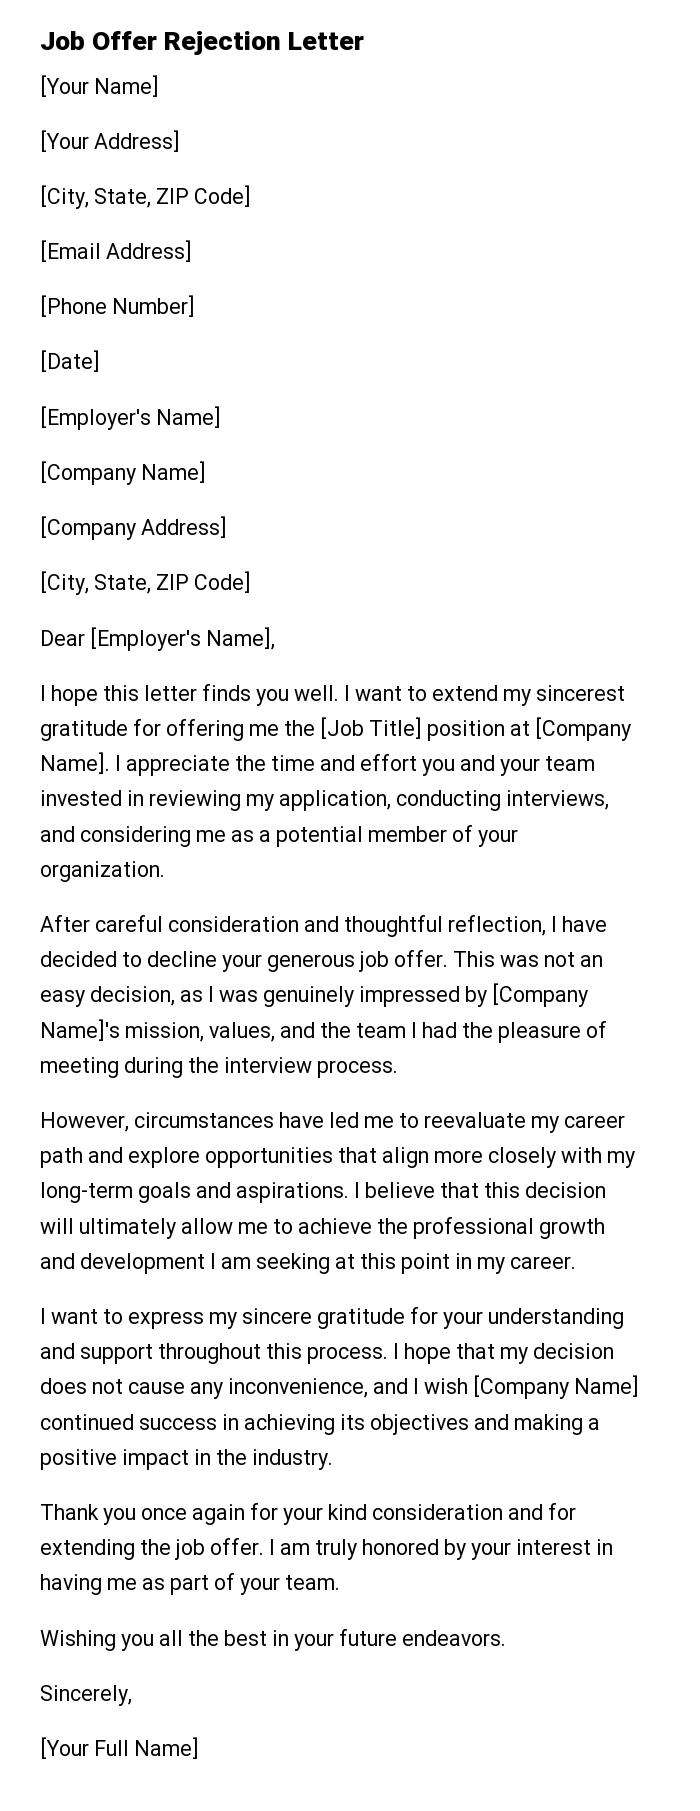 Job Offer Rejection Letter